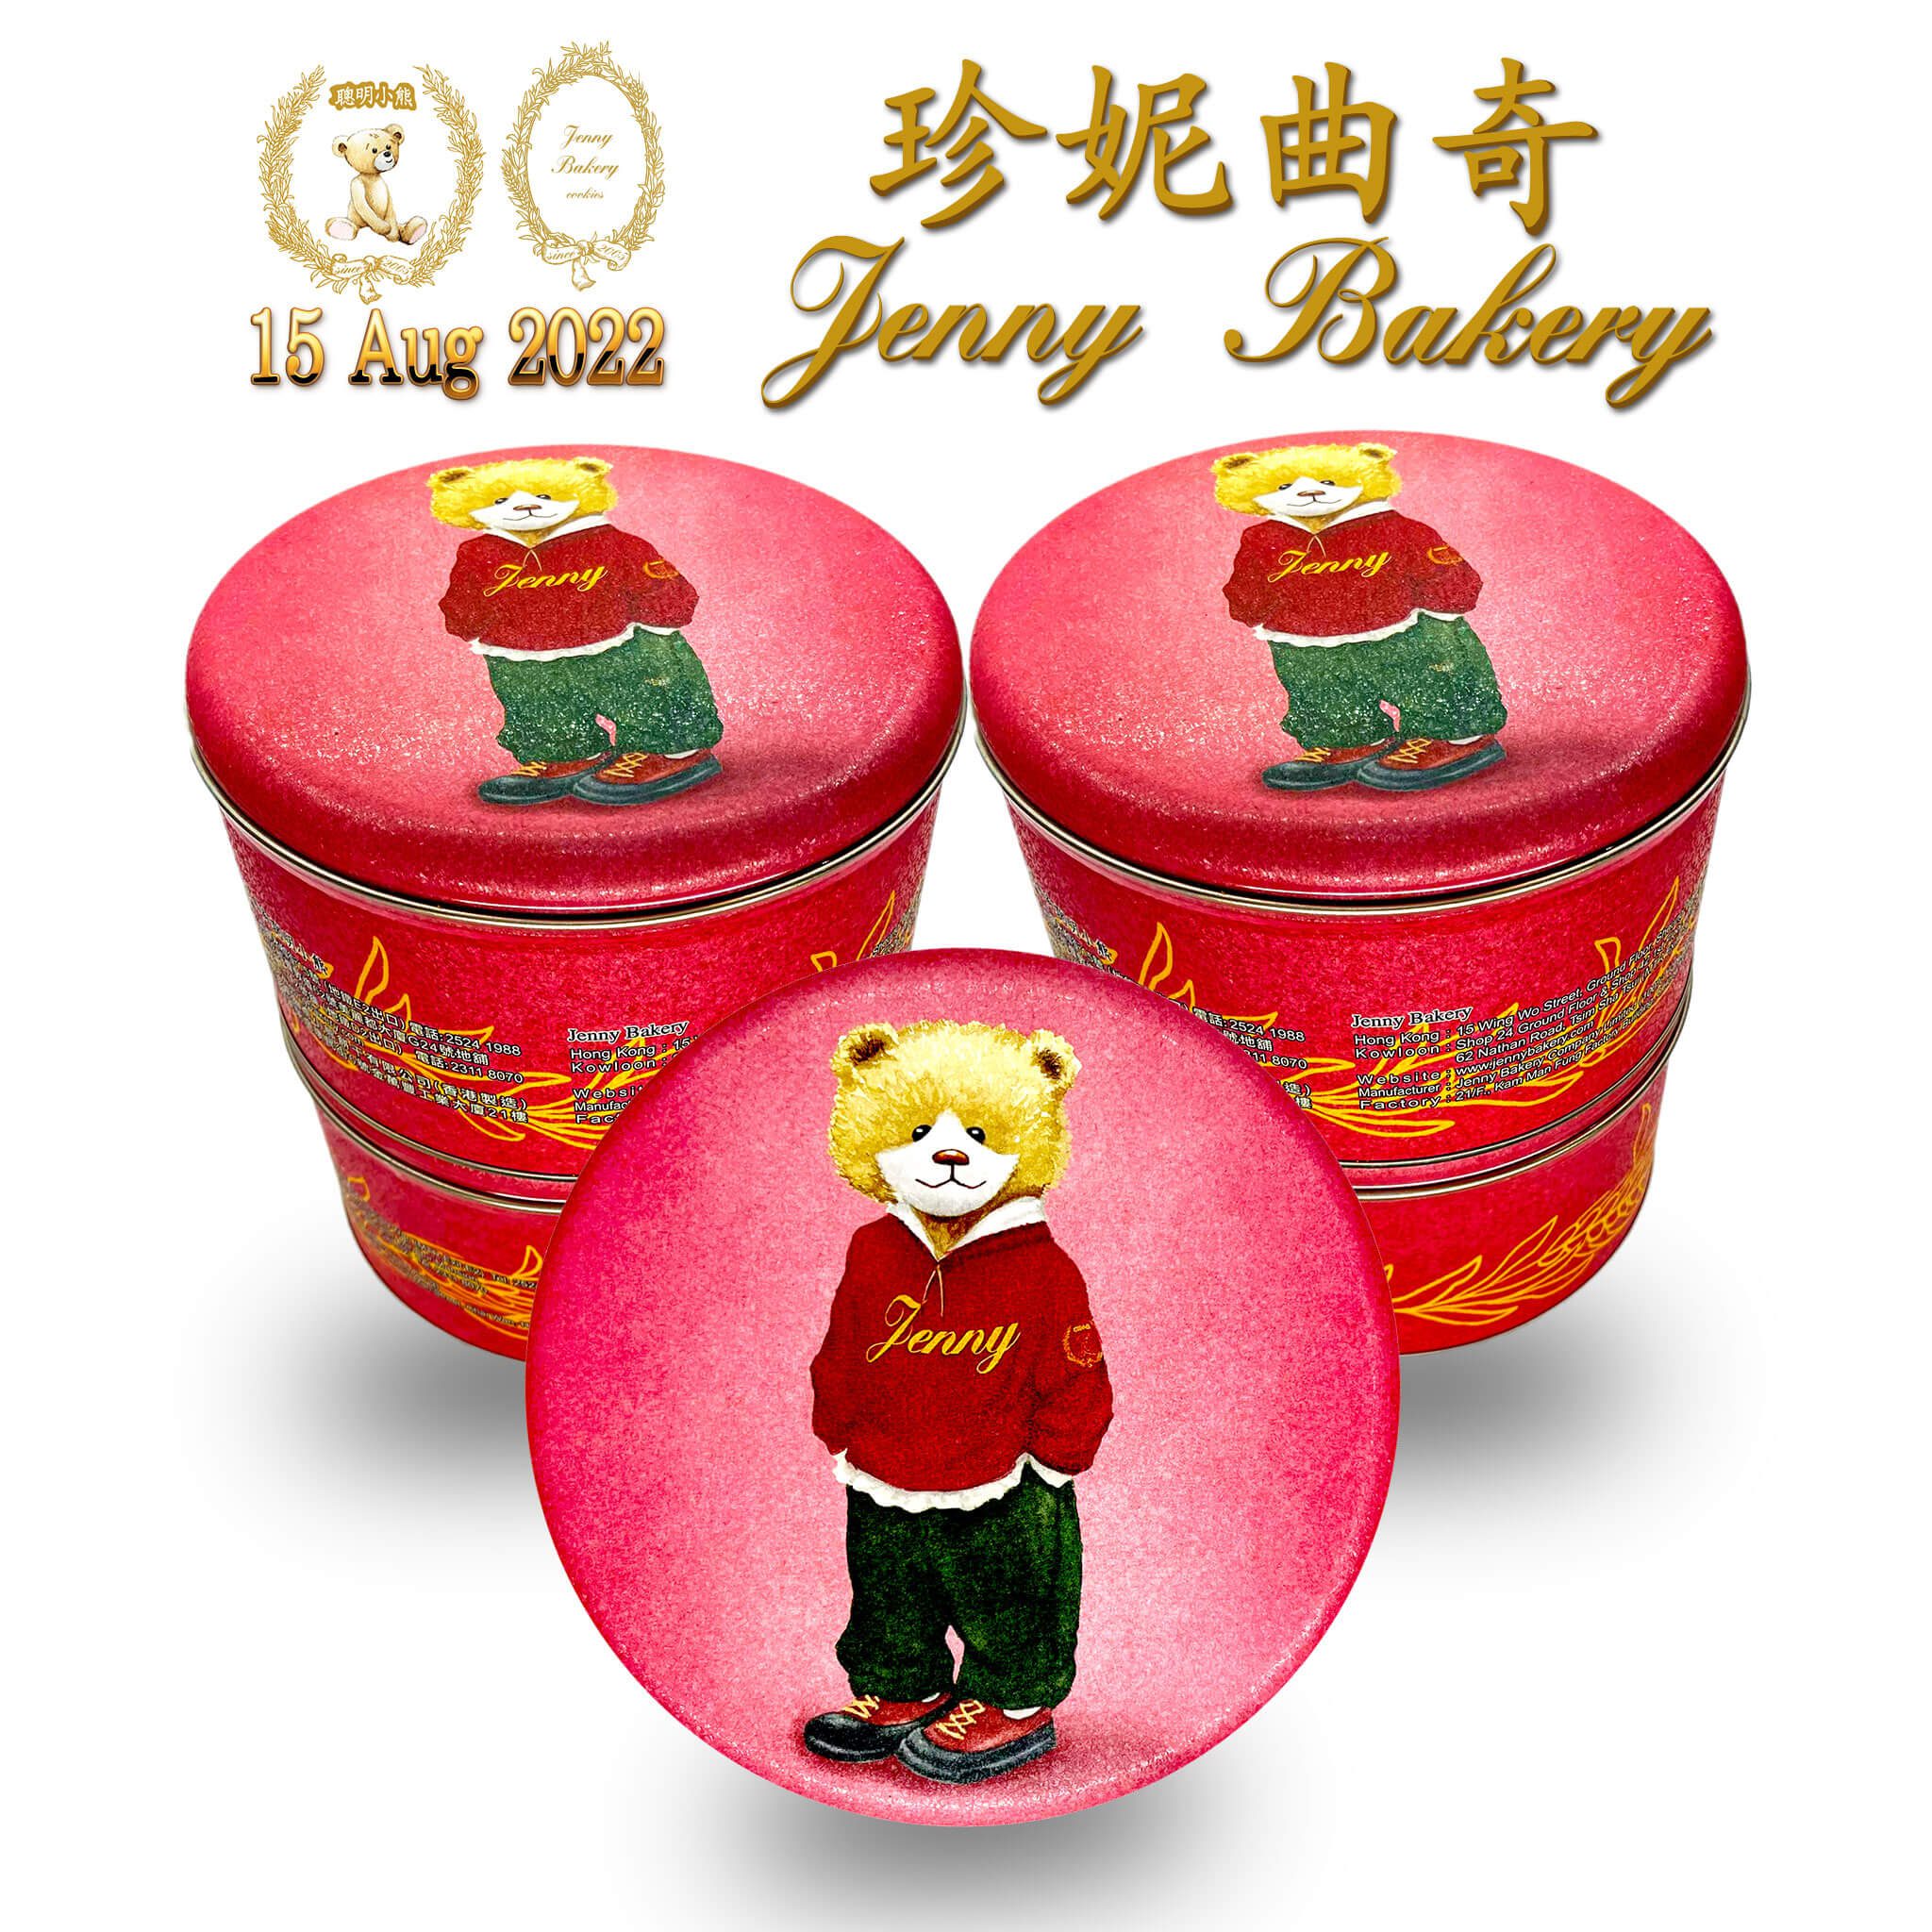 Jenny Bakery Hong Kong | Design20220802 MidAutumn